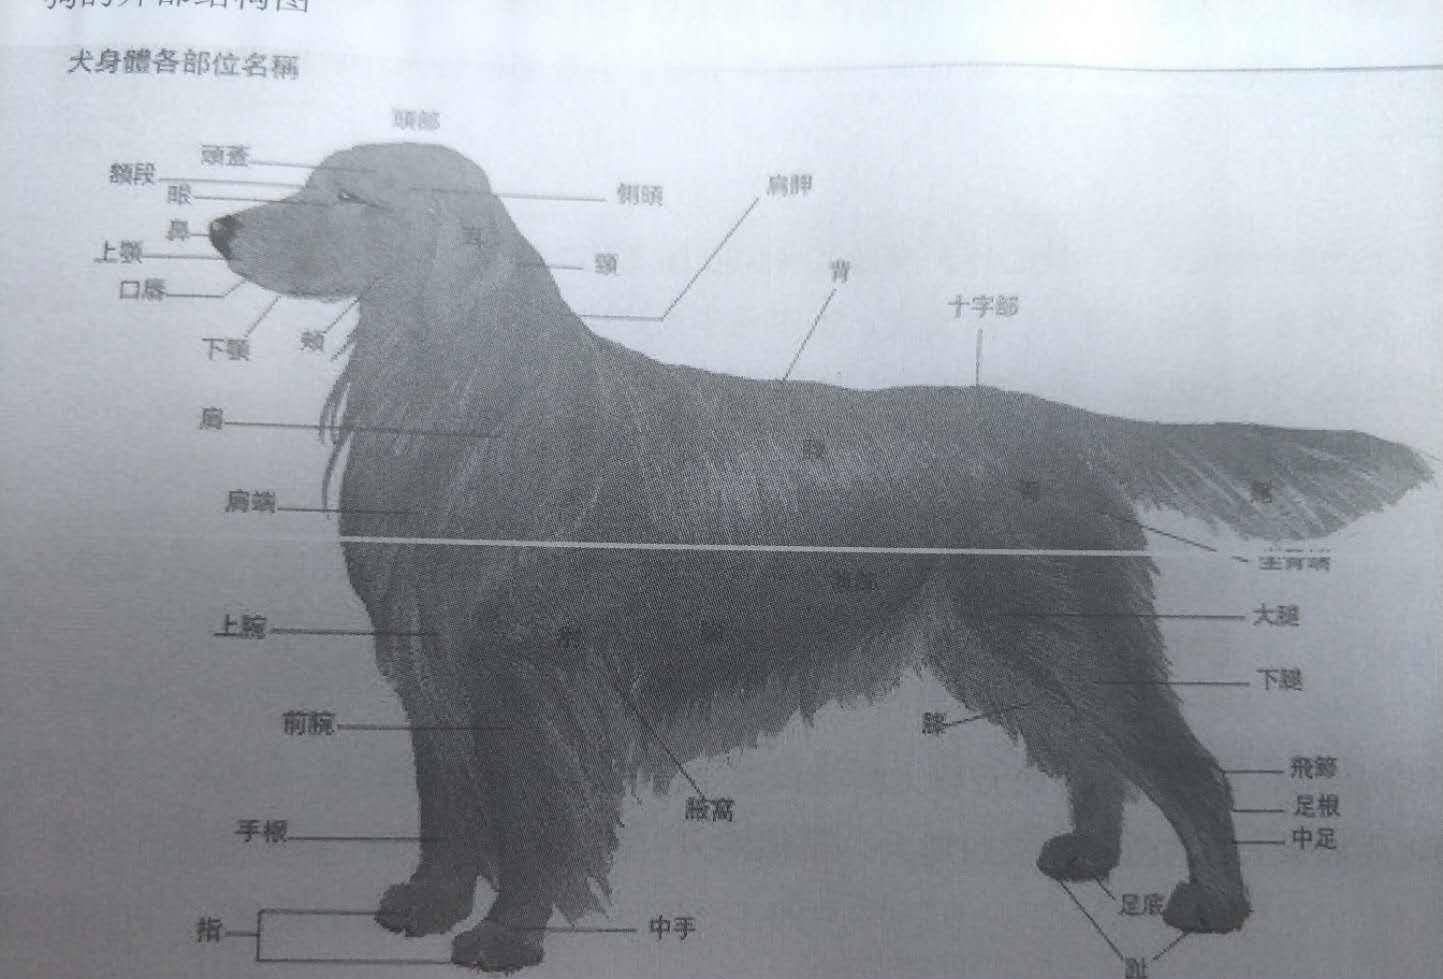 狗和人年龄对比表 狗的体型分类 按体型:超小型犬,小型犬,中型犬